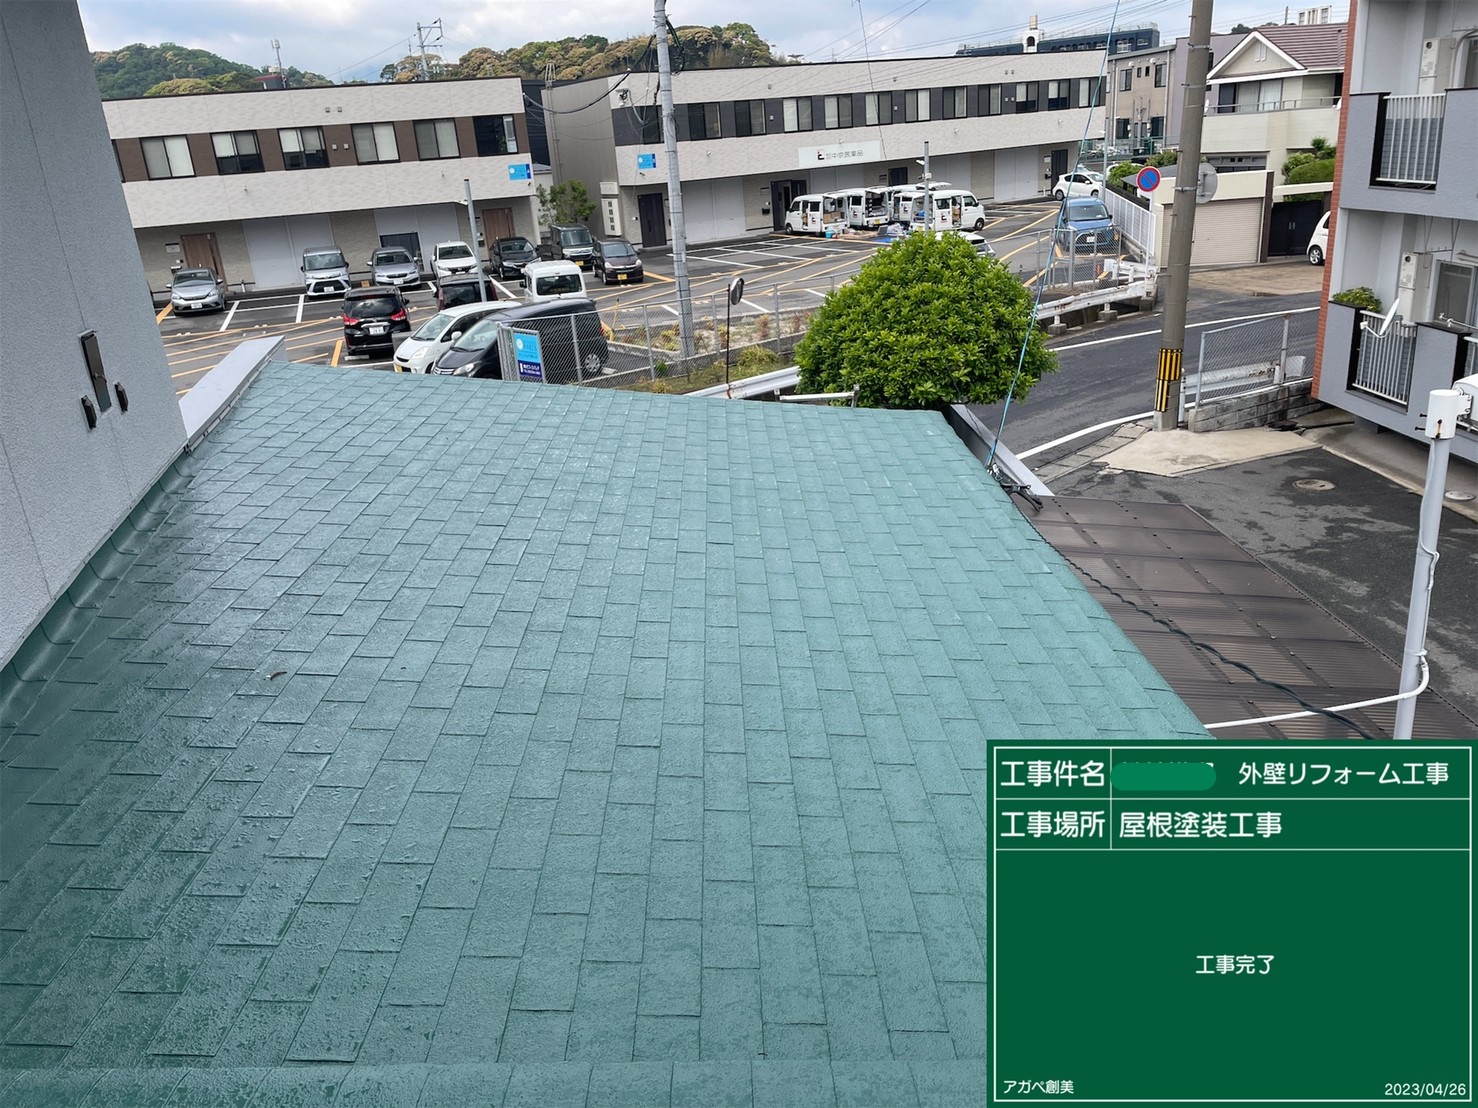 シングル屋根はニッペ1液水性反応硬化形シリコン樹脂屋根用塗料にて施工です。